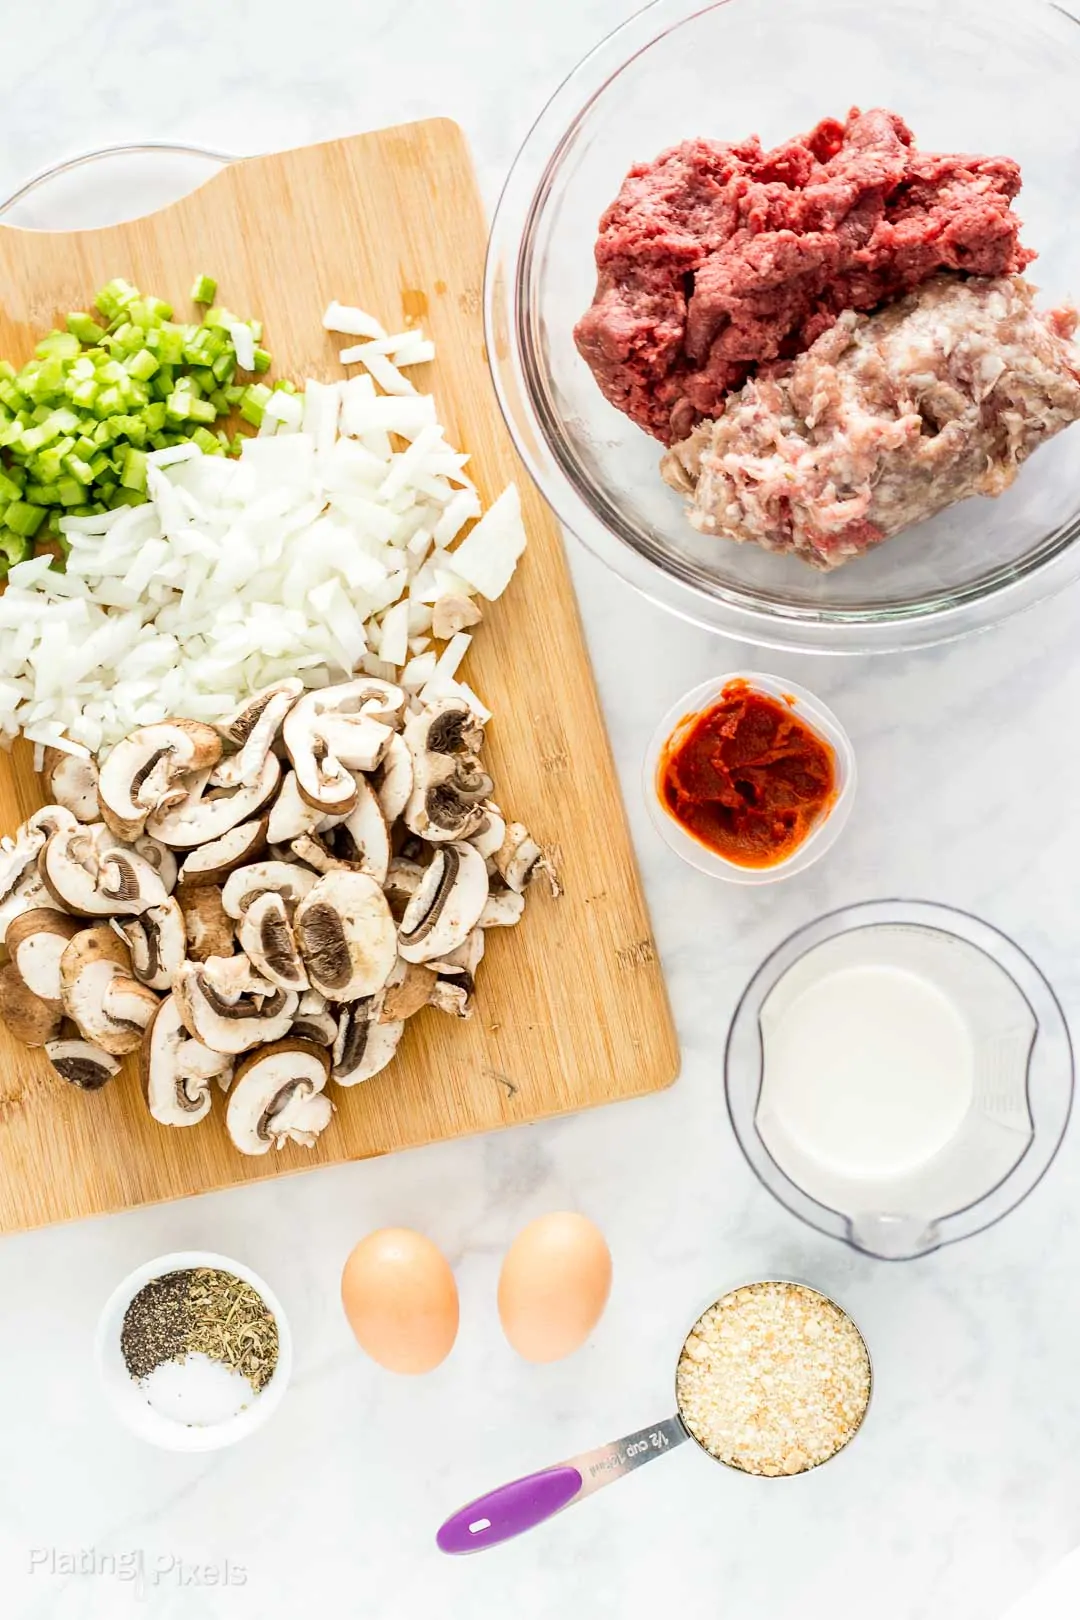 Prepared ingredients laid out to make mushroom meatloaf mixture